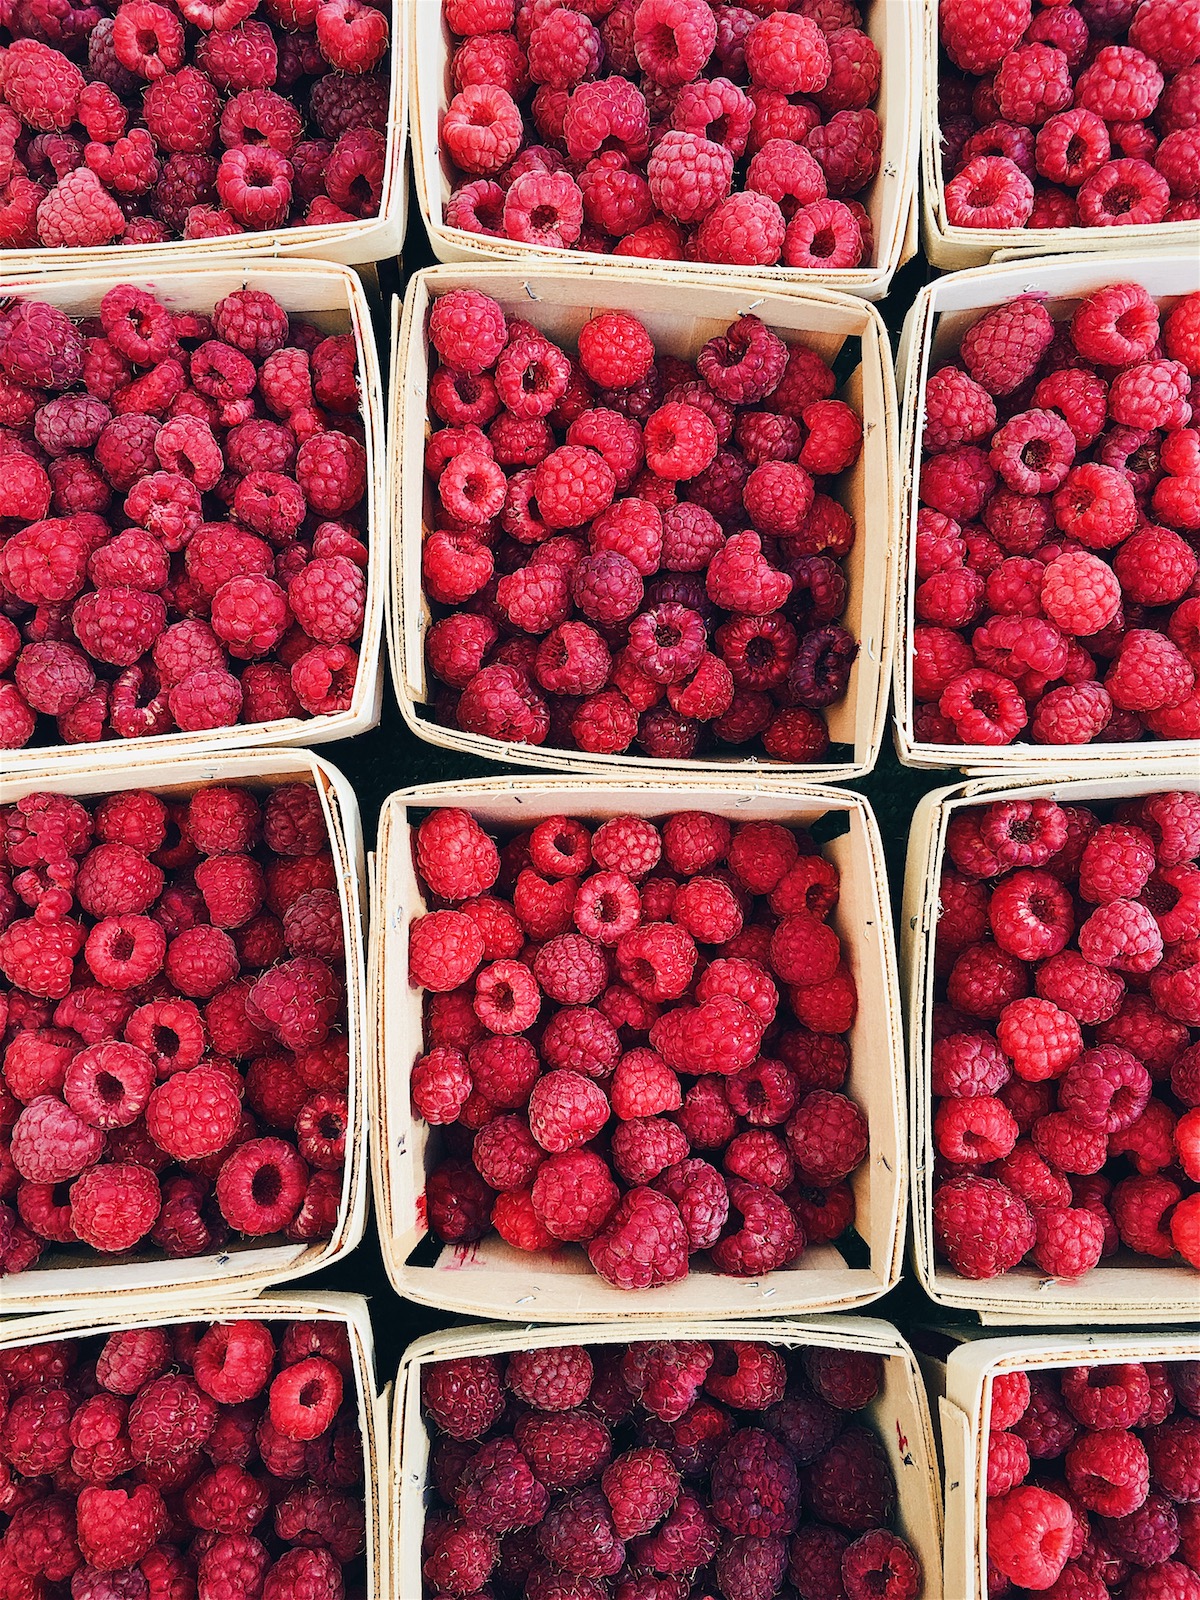 Farmer's Market Raspberries